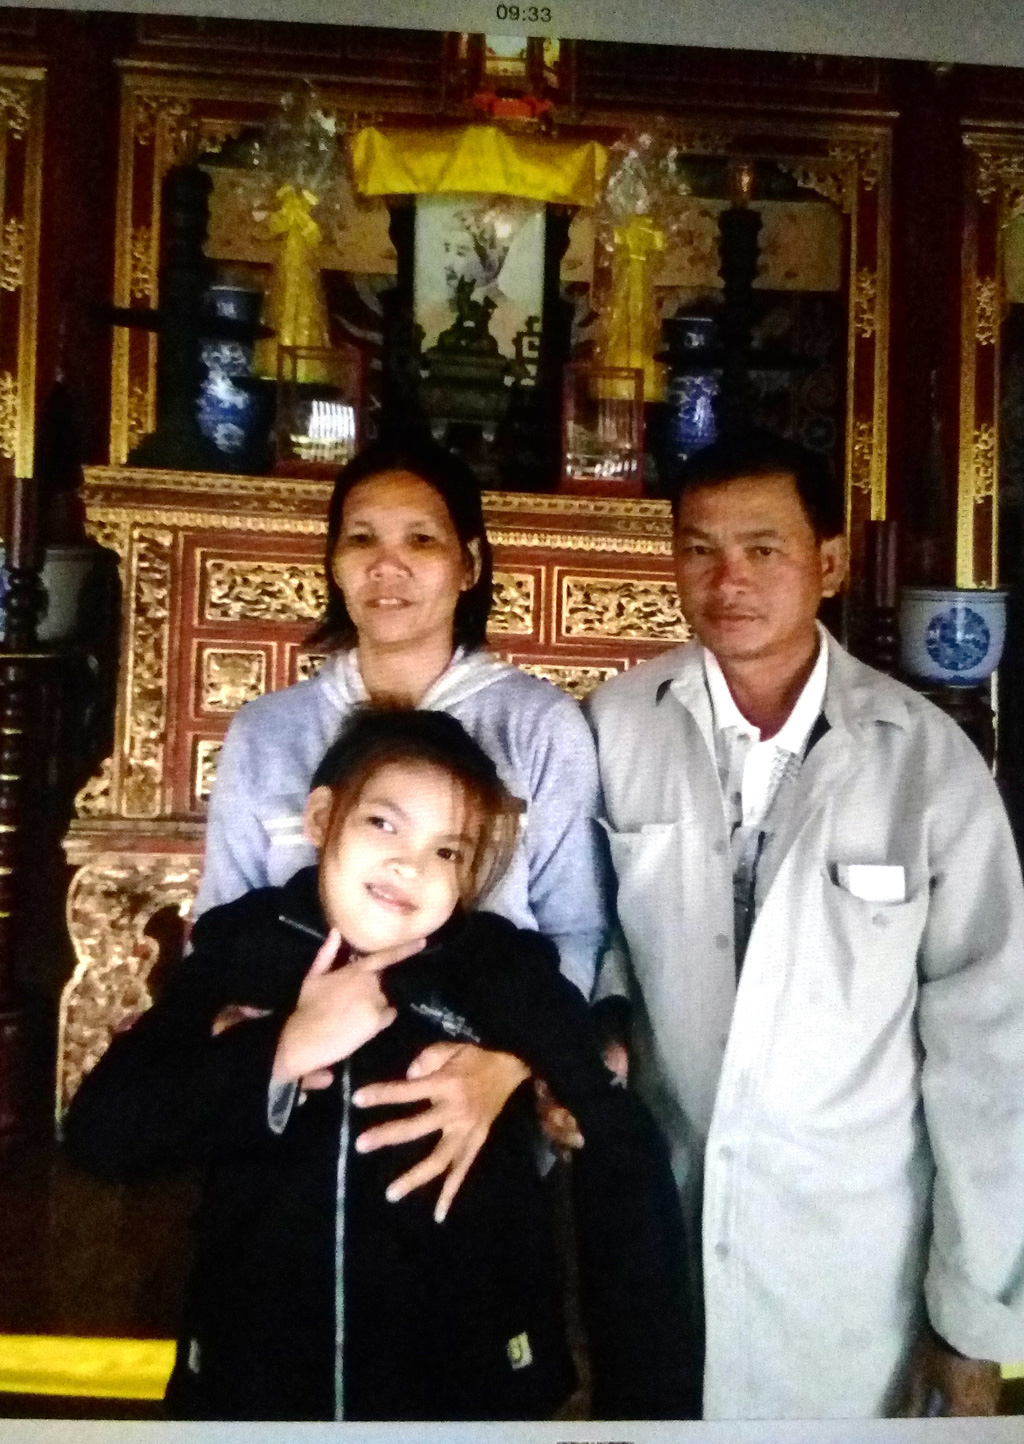 Từ sự tài trợ của Trung tâm Bảo tồn di tích cố đô Huế, trong những ngày cuối tháng 3.2016 gia đình nhỏ ông Nguyễn Phước Bảo Tài đã được thăm Thế Miếu (Đại nội Huế) – nơi thờ 13 vị vua triều Nguyễn - Ảnh: Đình Toàn